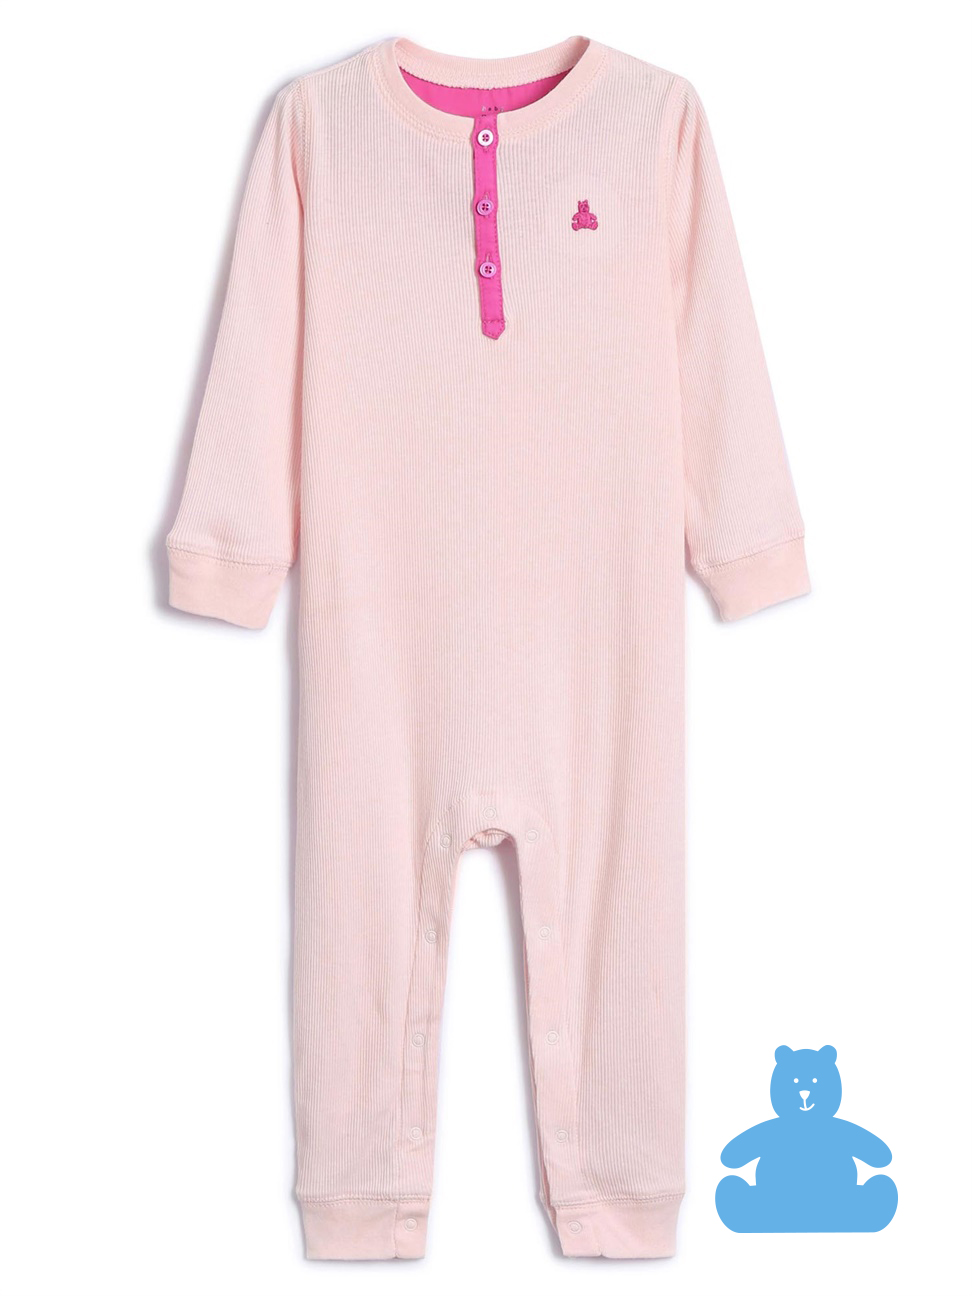 嬰兒裝|刺繡羅紋長袖包屁衣 布萊納系列-淺粉色